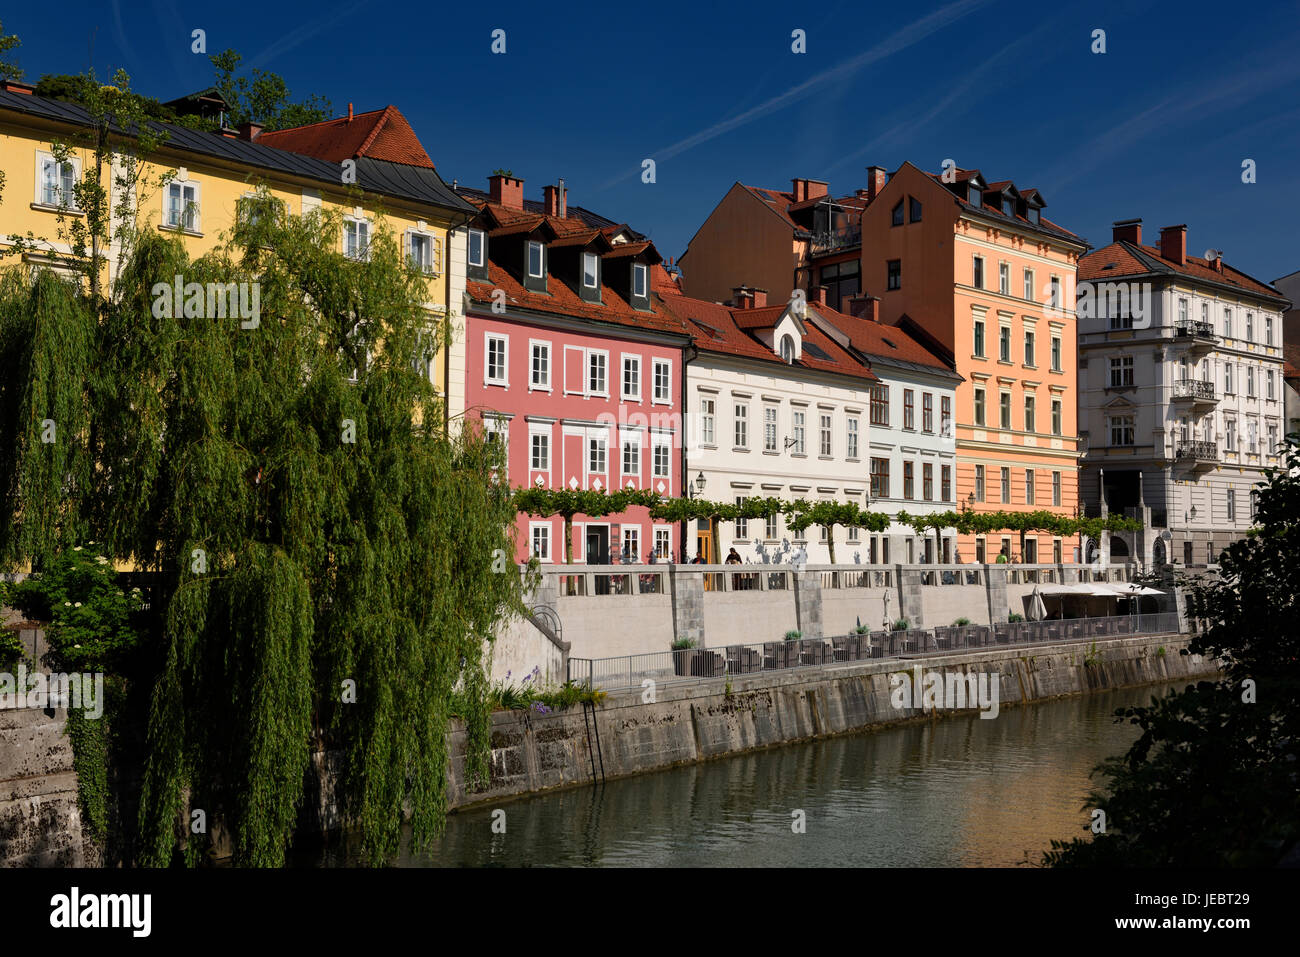 Helle Pastellfarben renovierten historischen Gebäuden Hribar Kai Ufer des Flusses Ljubljanica Kanal Wasserstraße von Ljubljana Slowenien Stockfoto